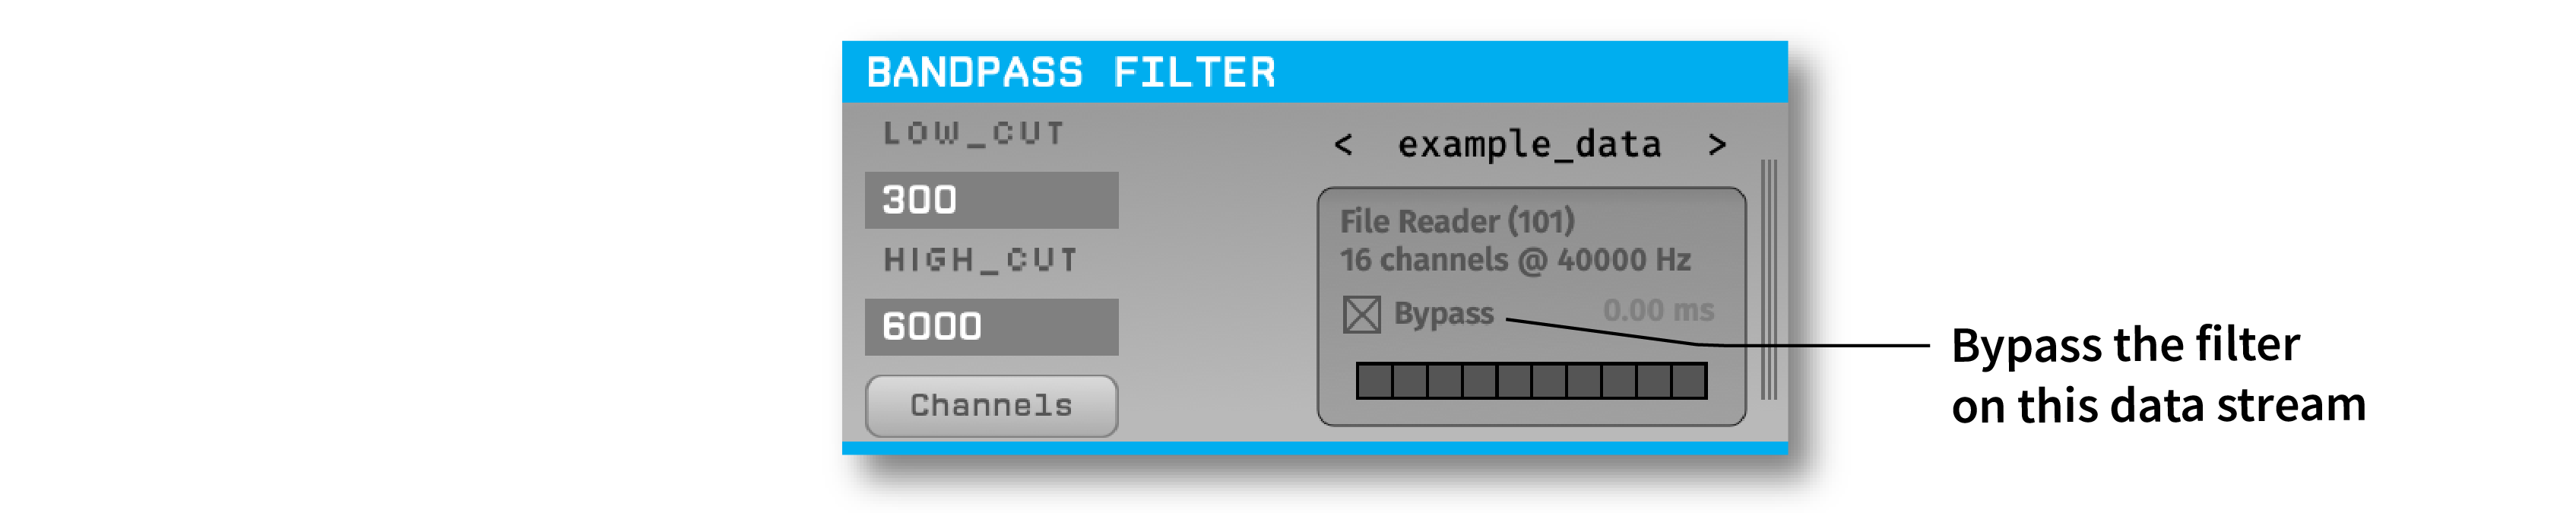 Annotated Bandpass Filter bypass operation